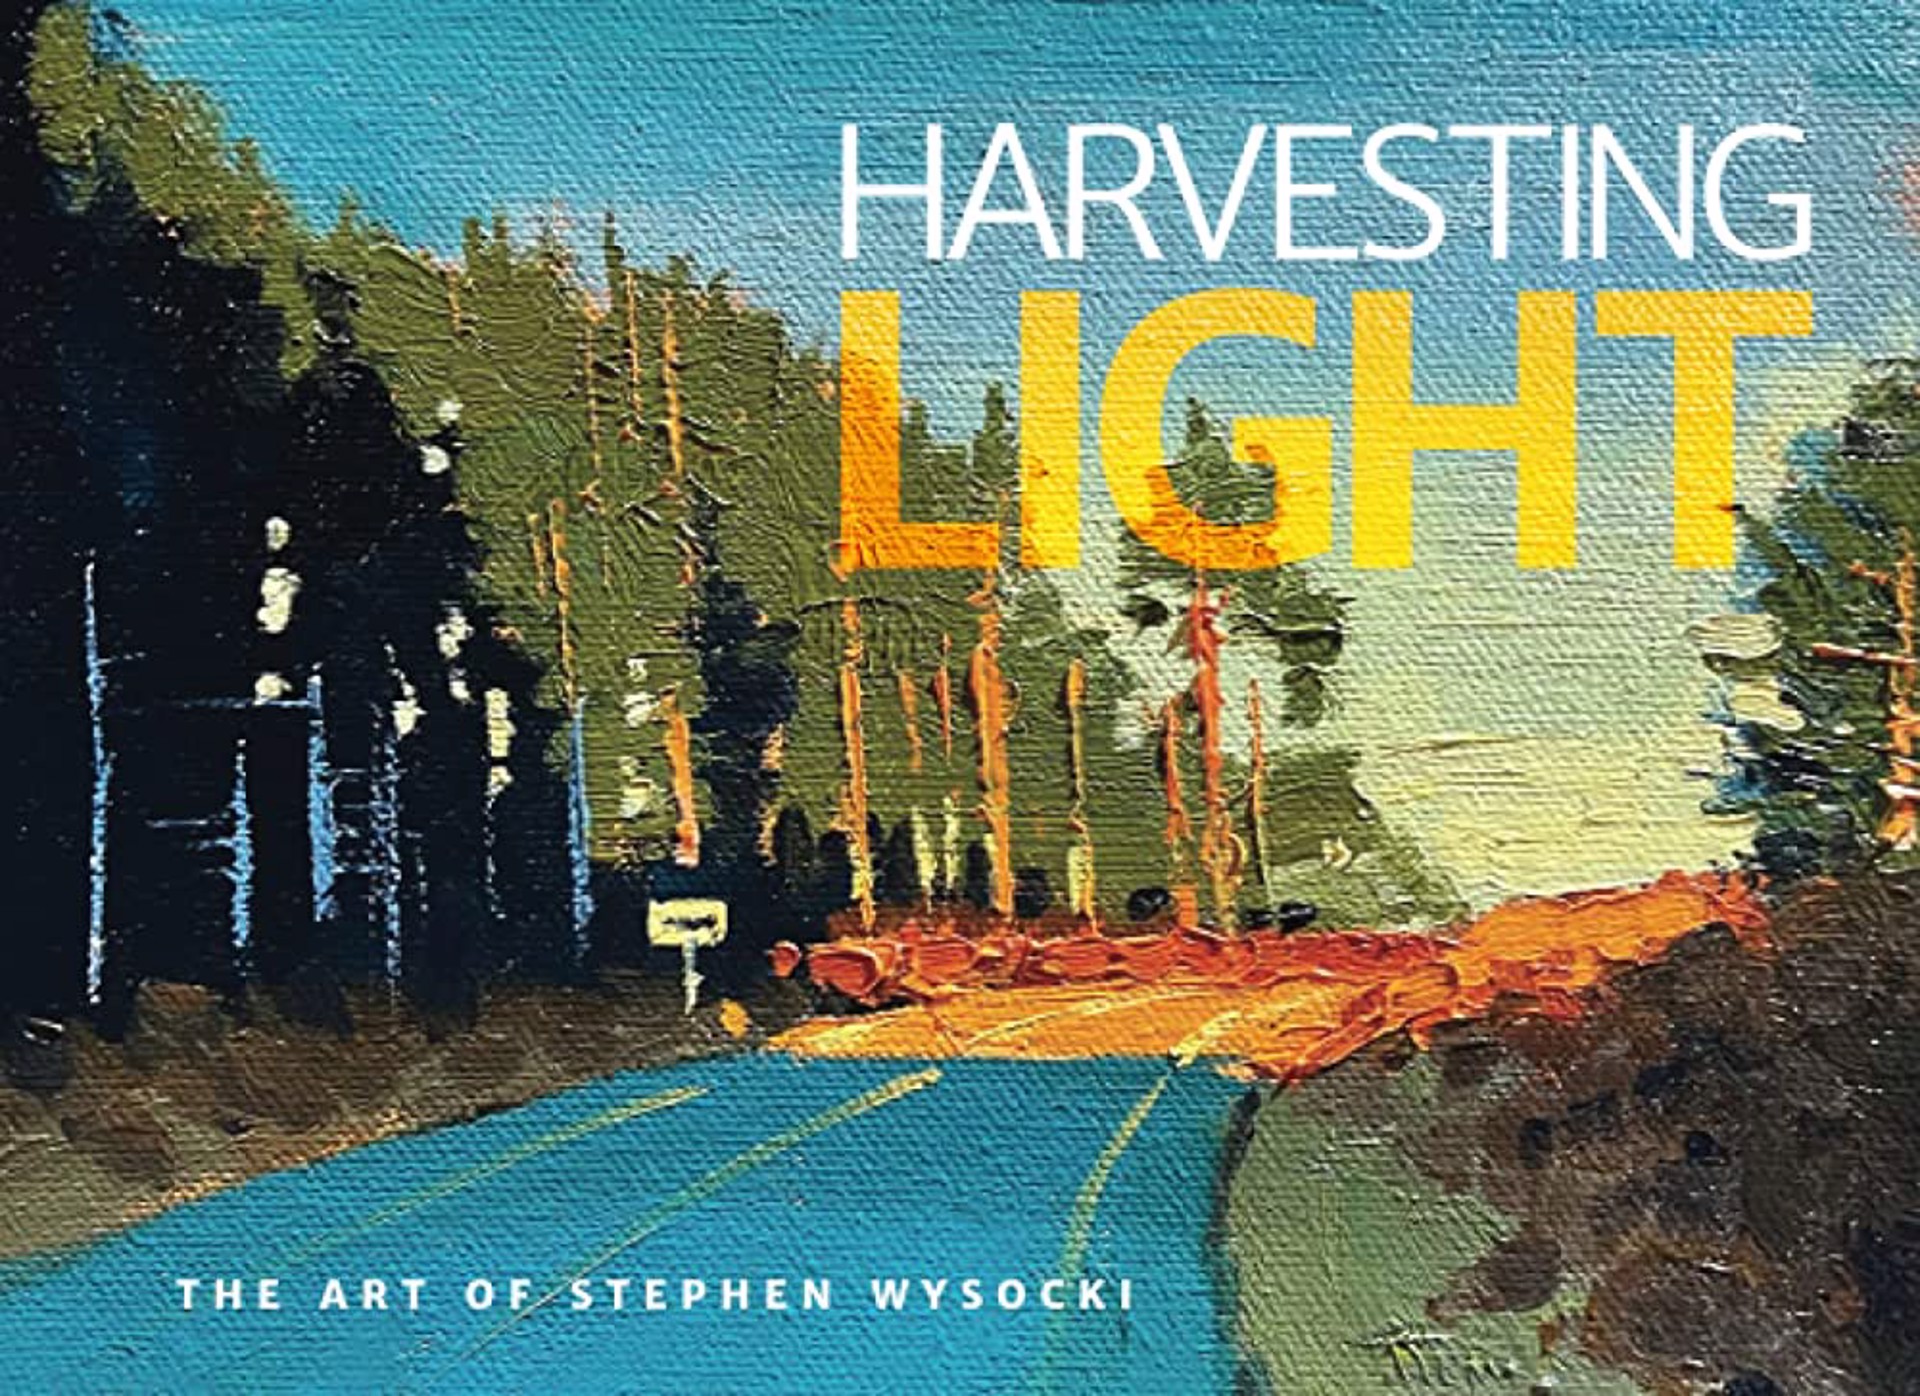 HARVESTING LIGHT by Stephen Wysocki